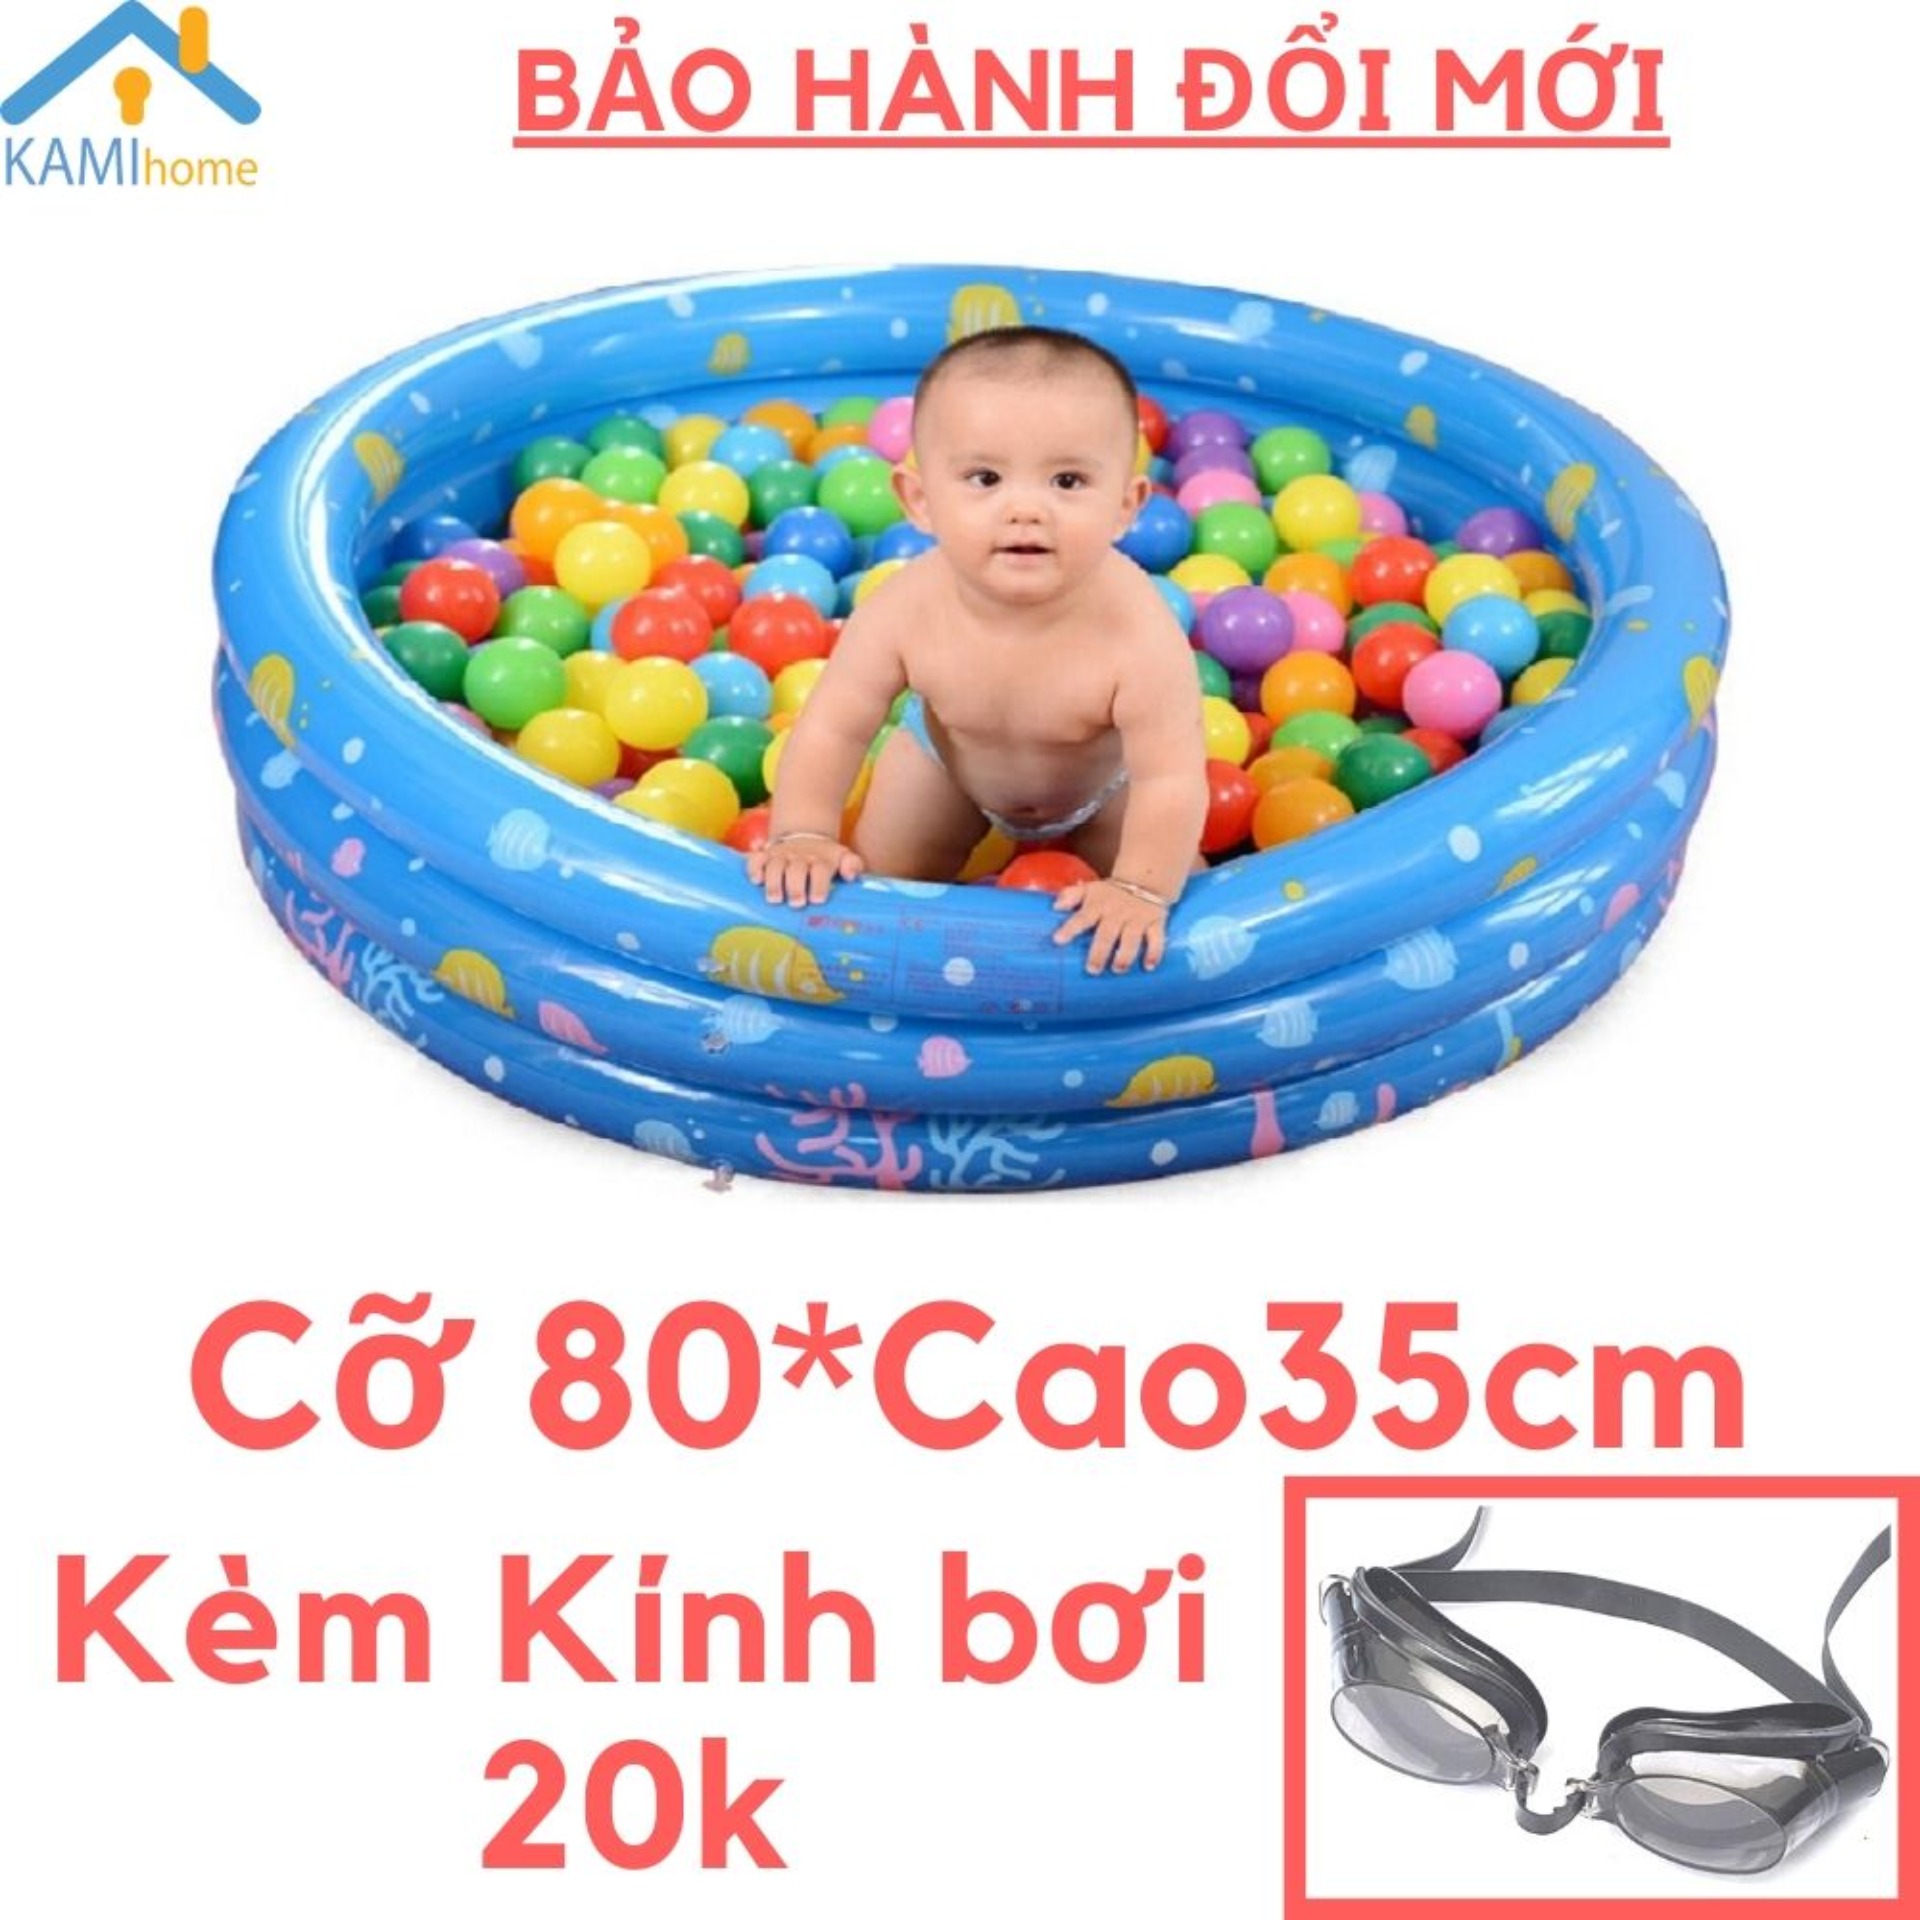 Bể bơi hồ bơi phao bơm hơi Tròn 80 Cao35cm Kèm Kính bơi cho trẻ em bé Nhà